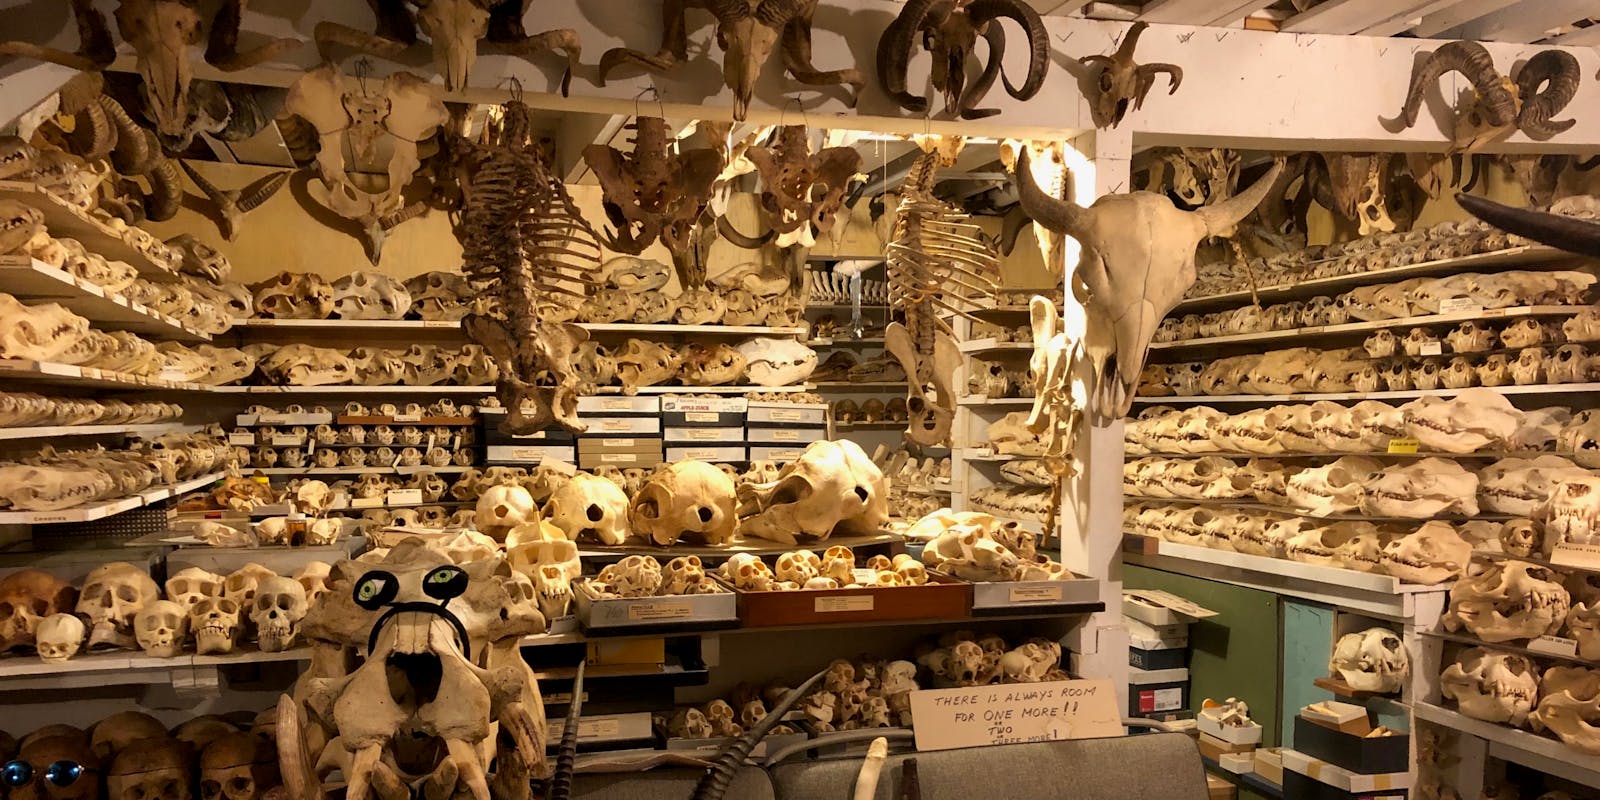 The basement full of skulls